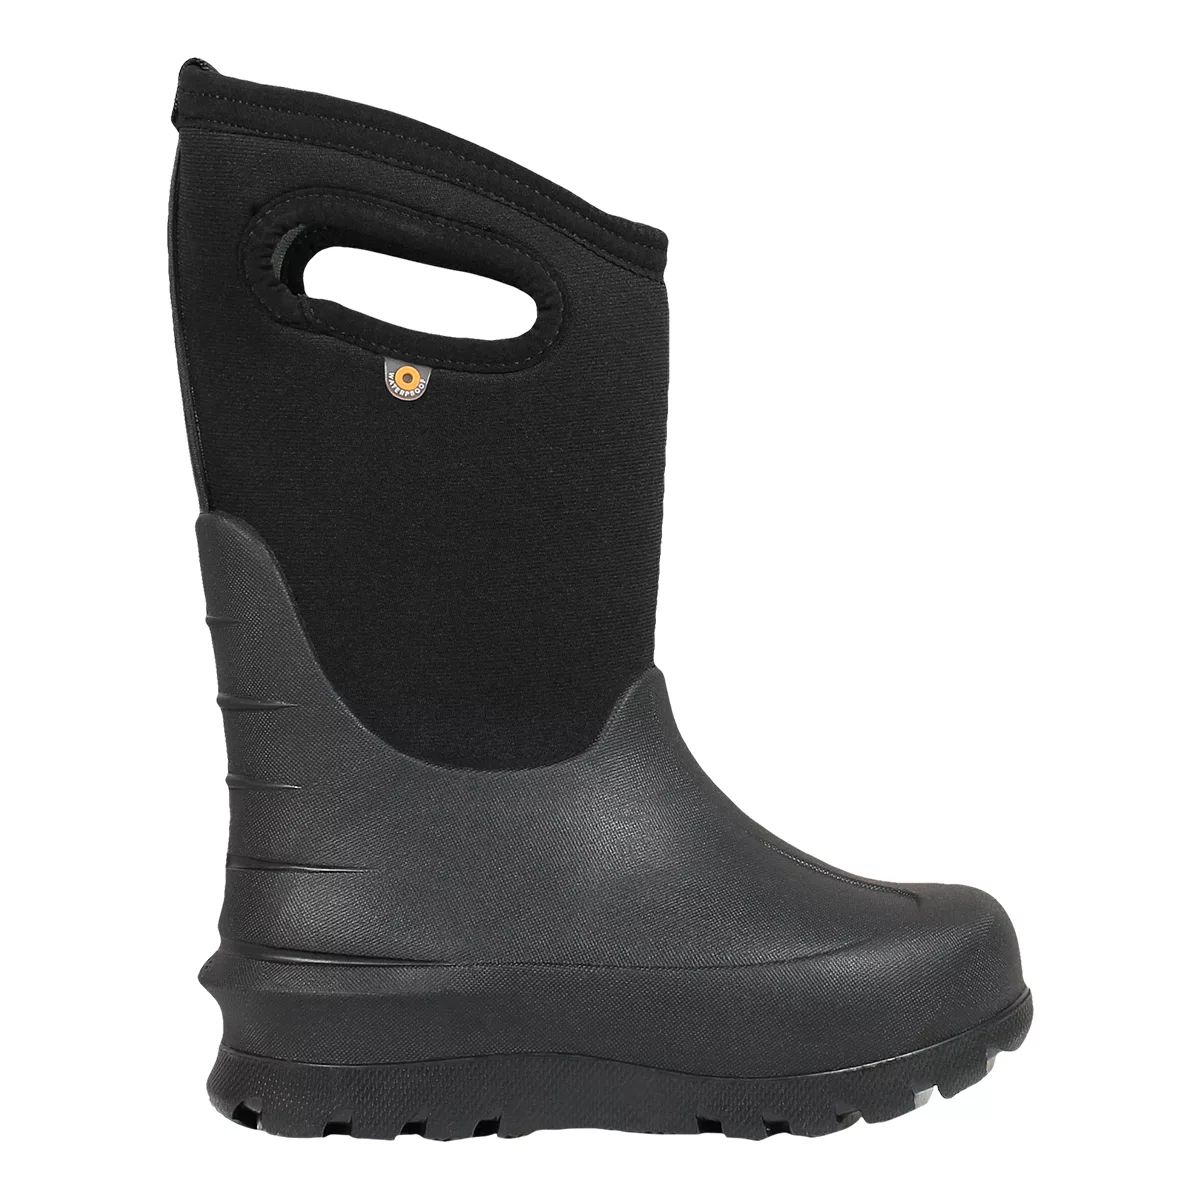 Bogs Kids' Pre-School/Grade School Neo Classic Winter Boots  Boys' Waterproof Lightweight